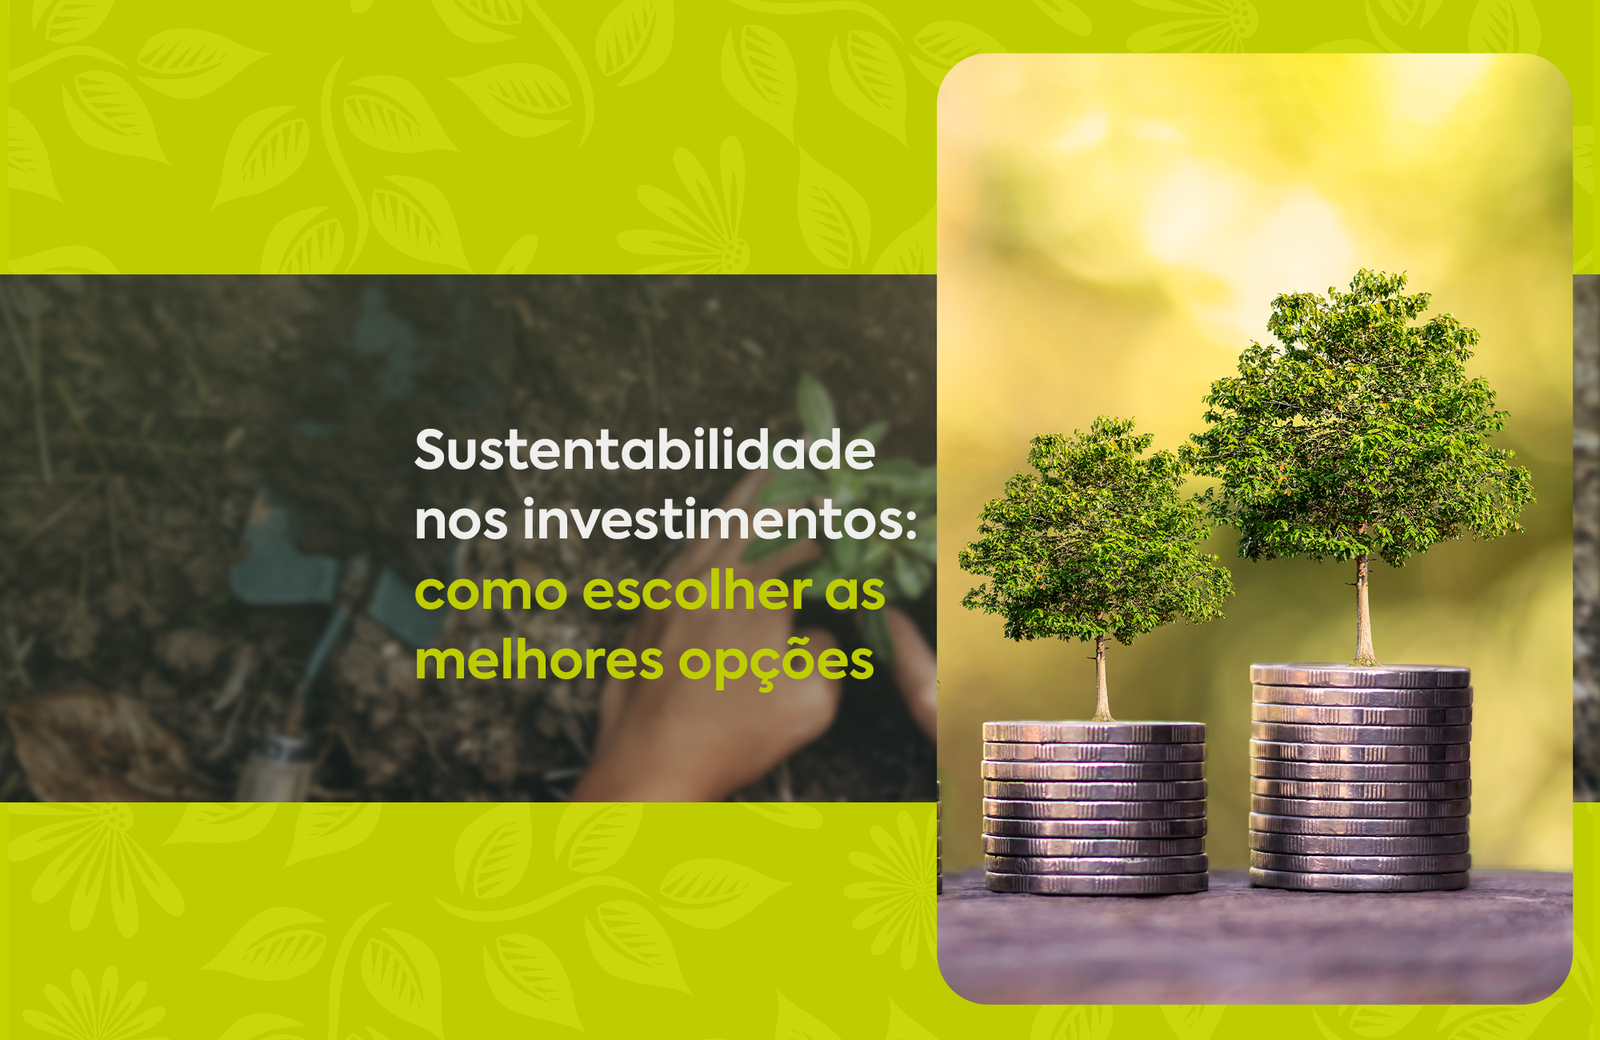 Sustentabilidade nos investimentos como escolher as melhores opções